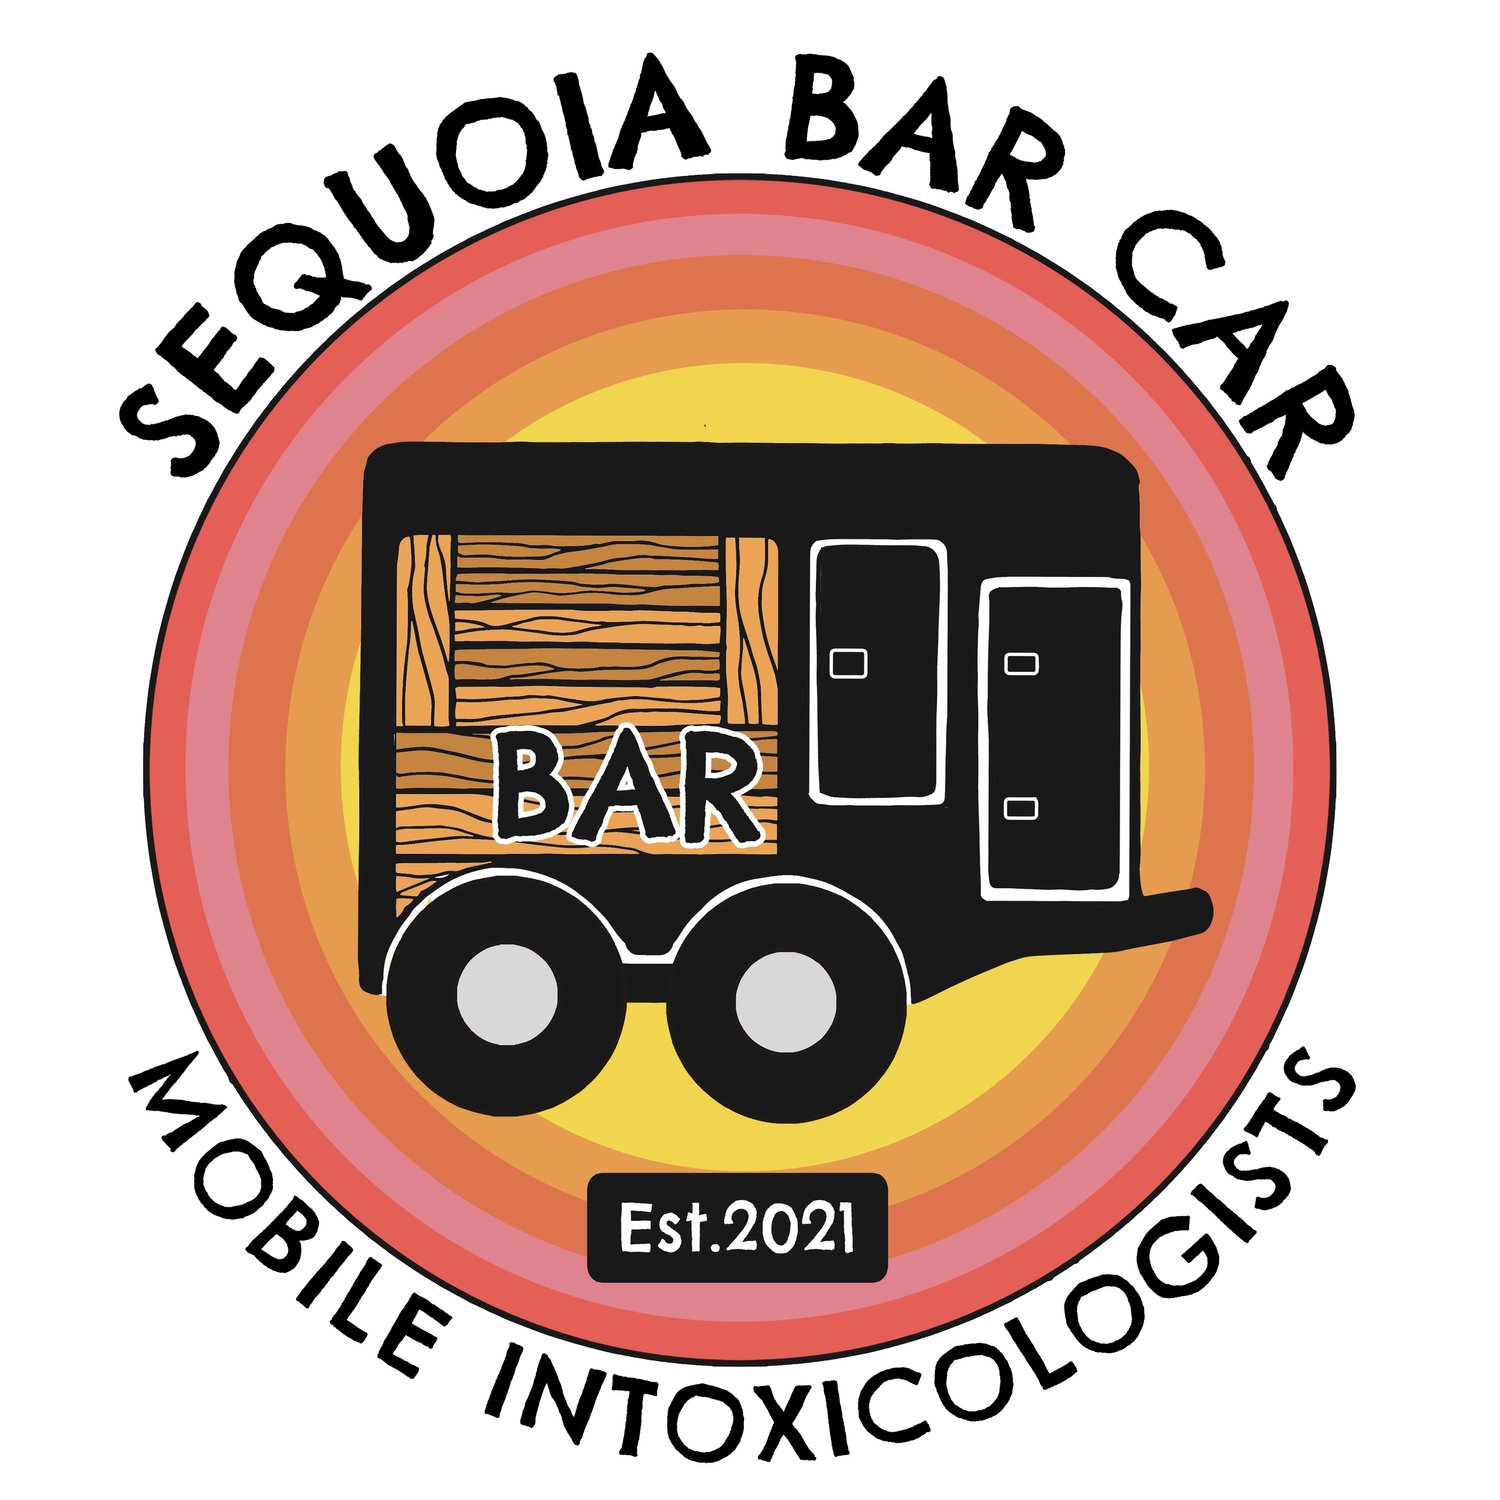 Sequoia Bar Car